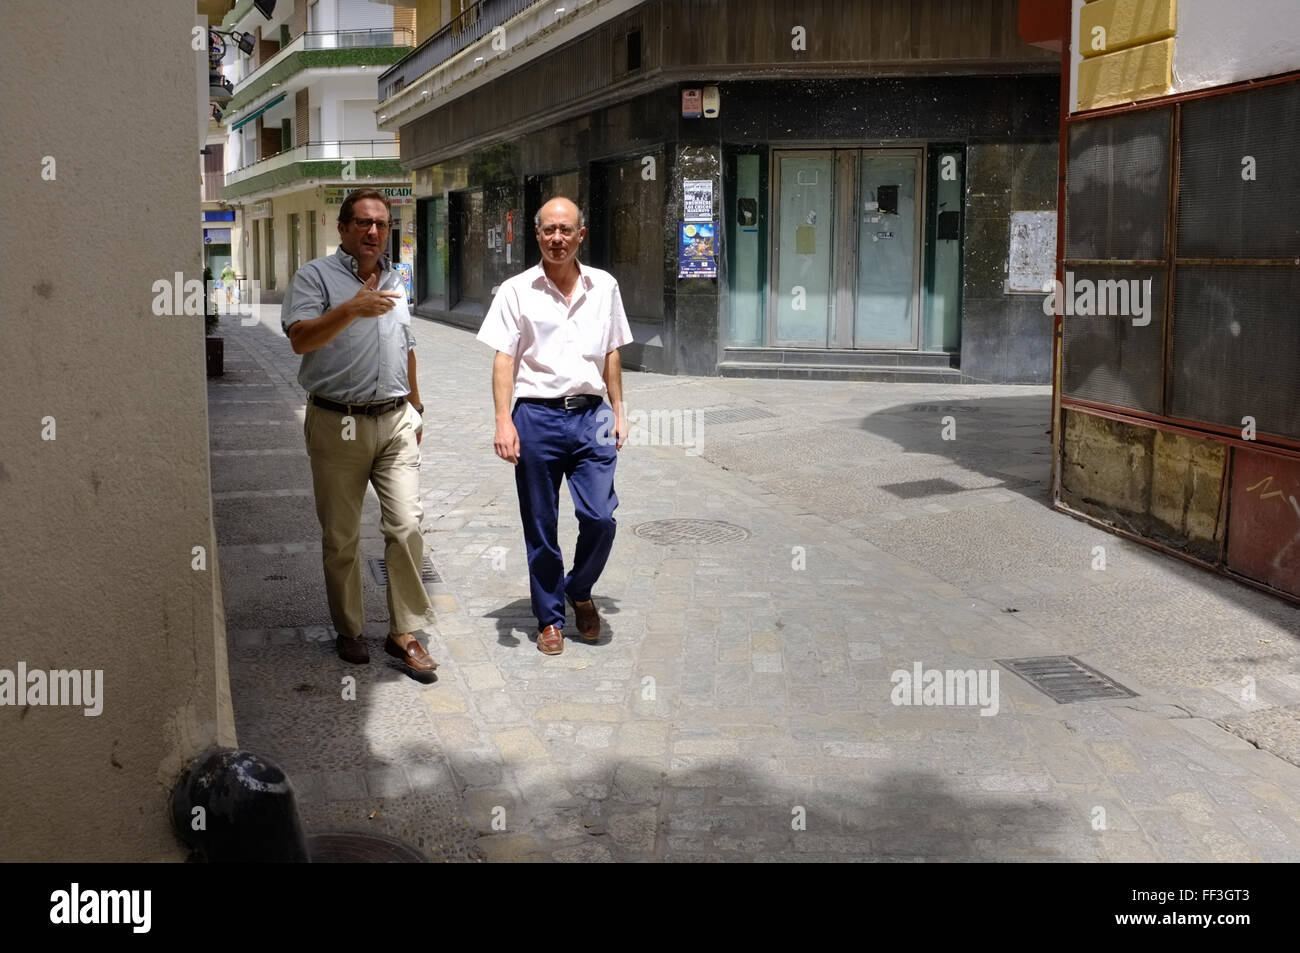 Two Spanish men in Cadiz, Spain Stock Photo